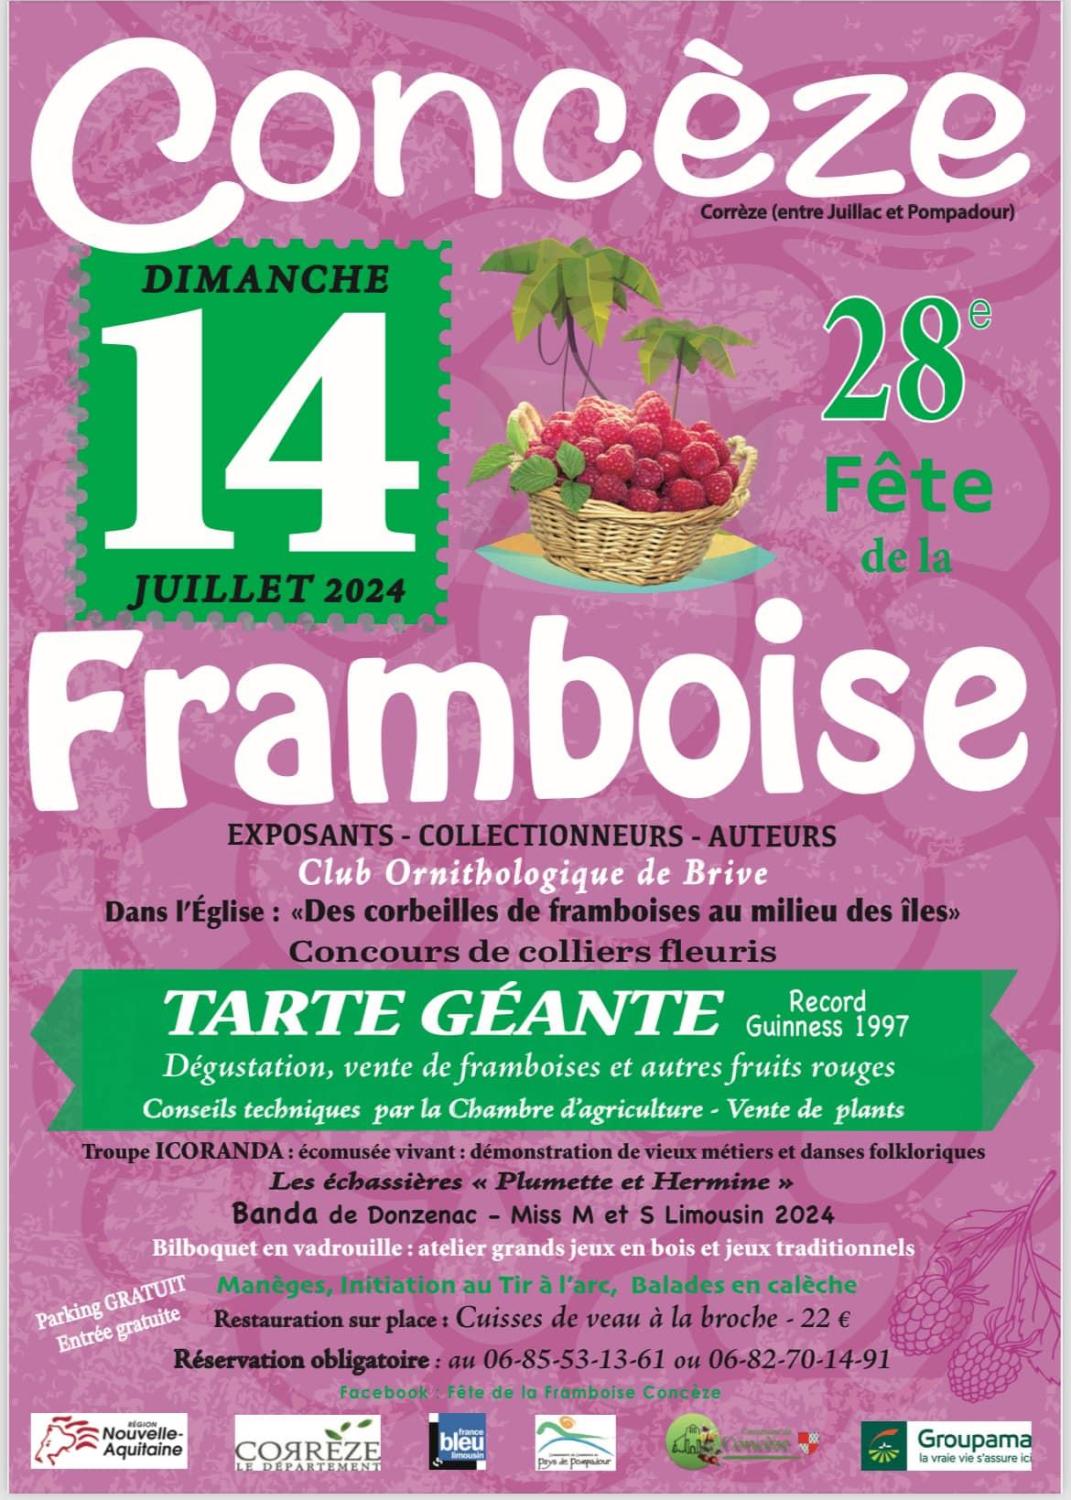 Concèze - Fête de la Framboise - 14 07 2024